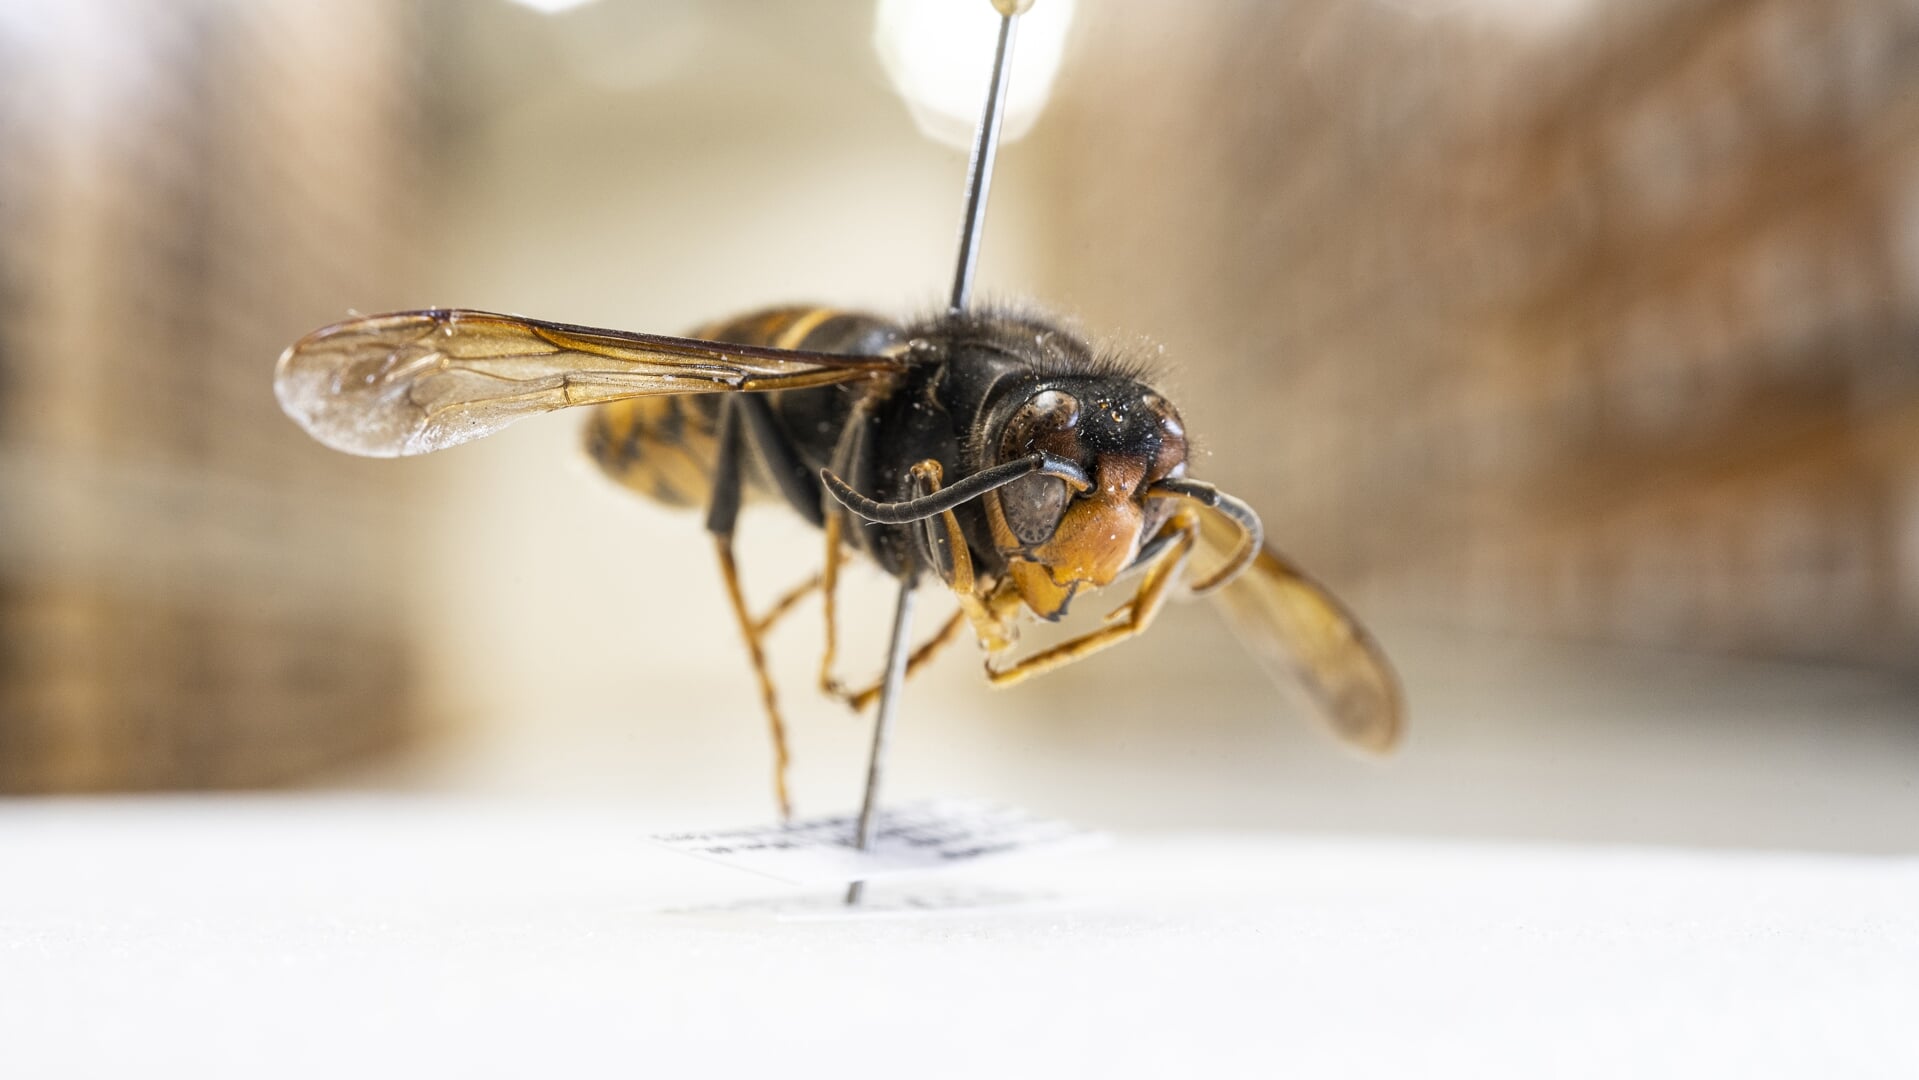 Een opgezette Aziatische hoornaar in museum Naturalis.